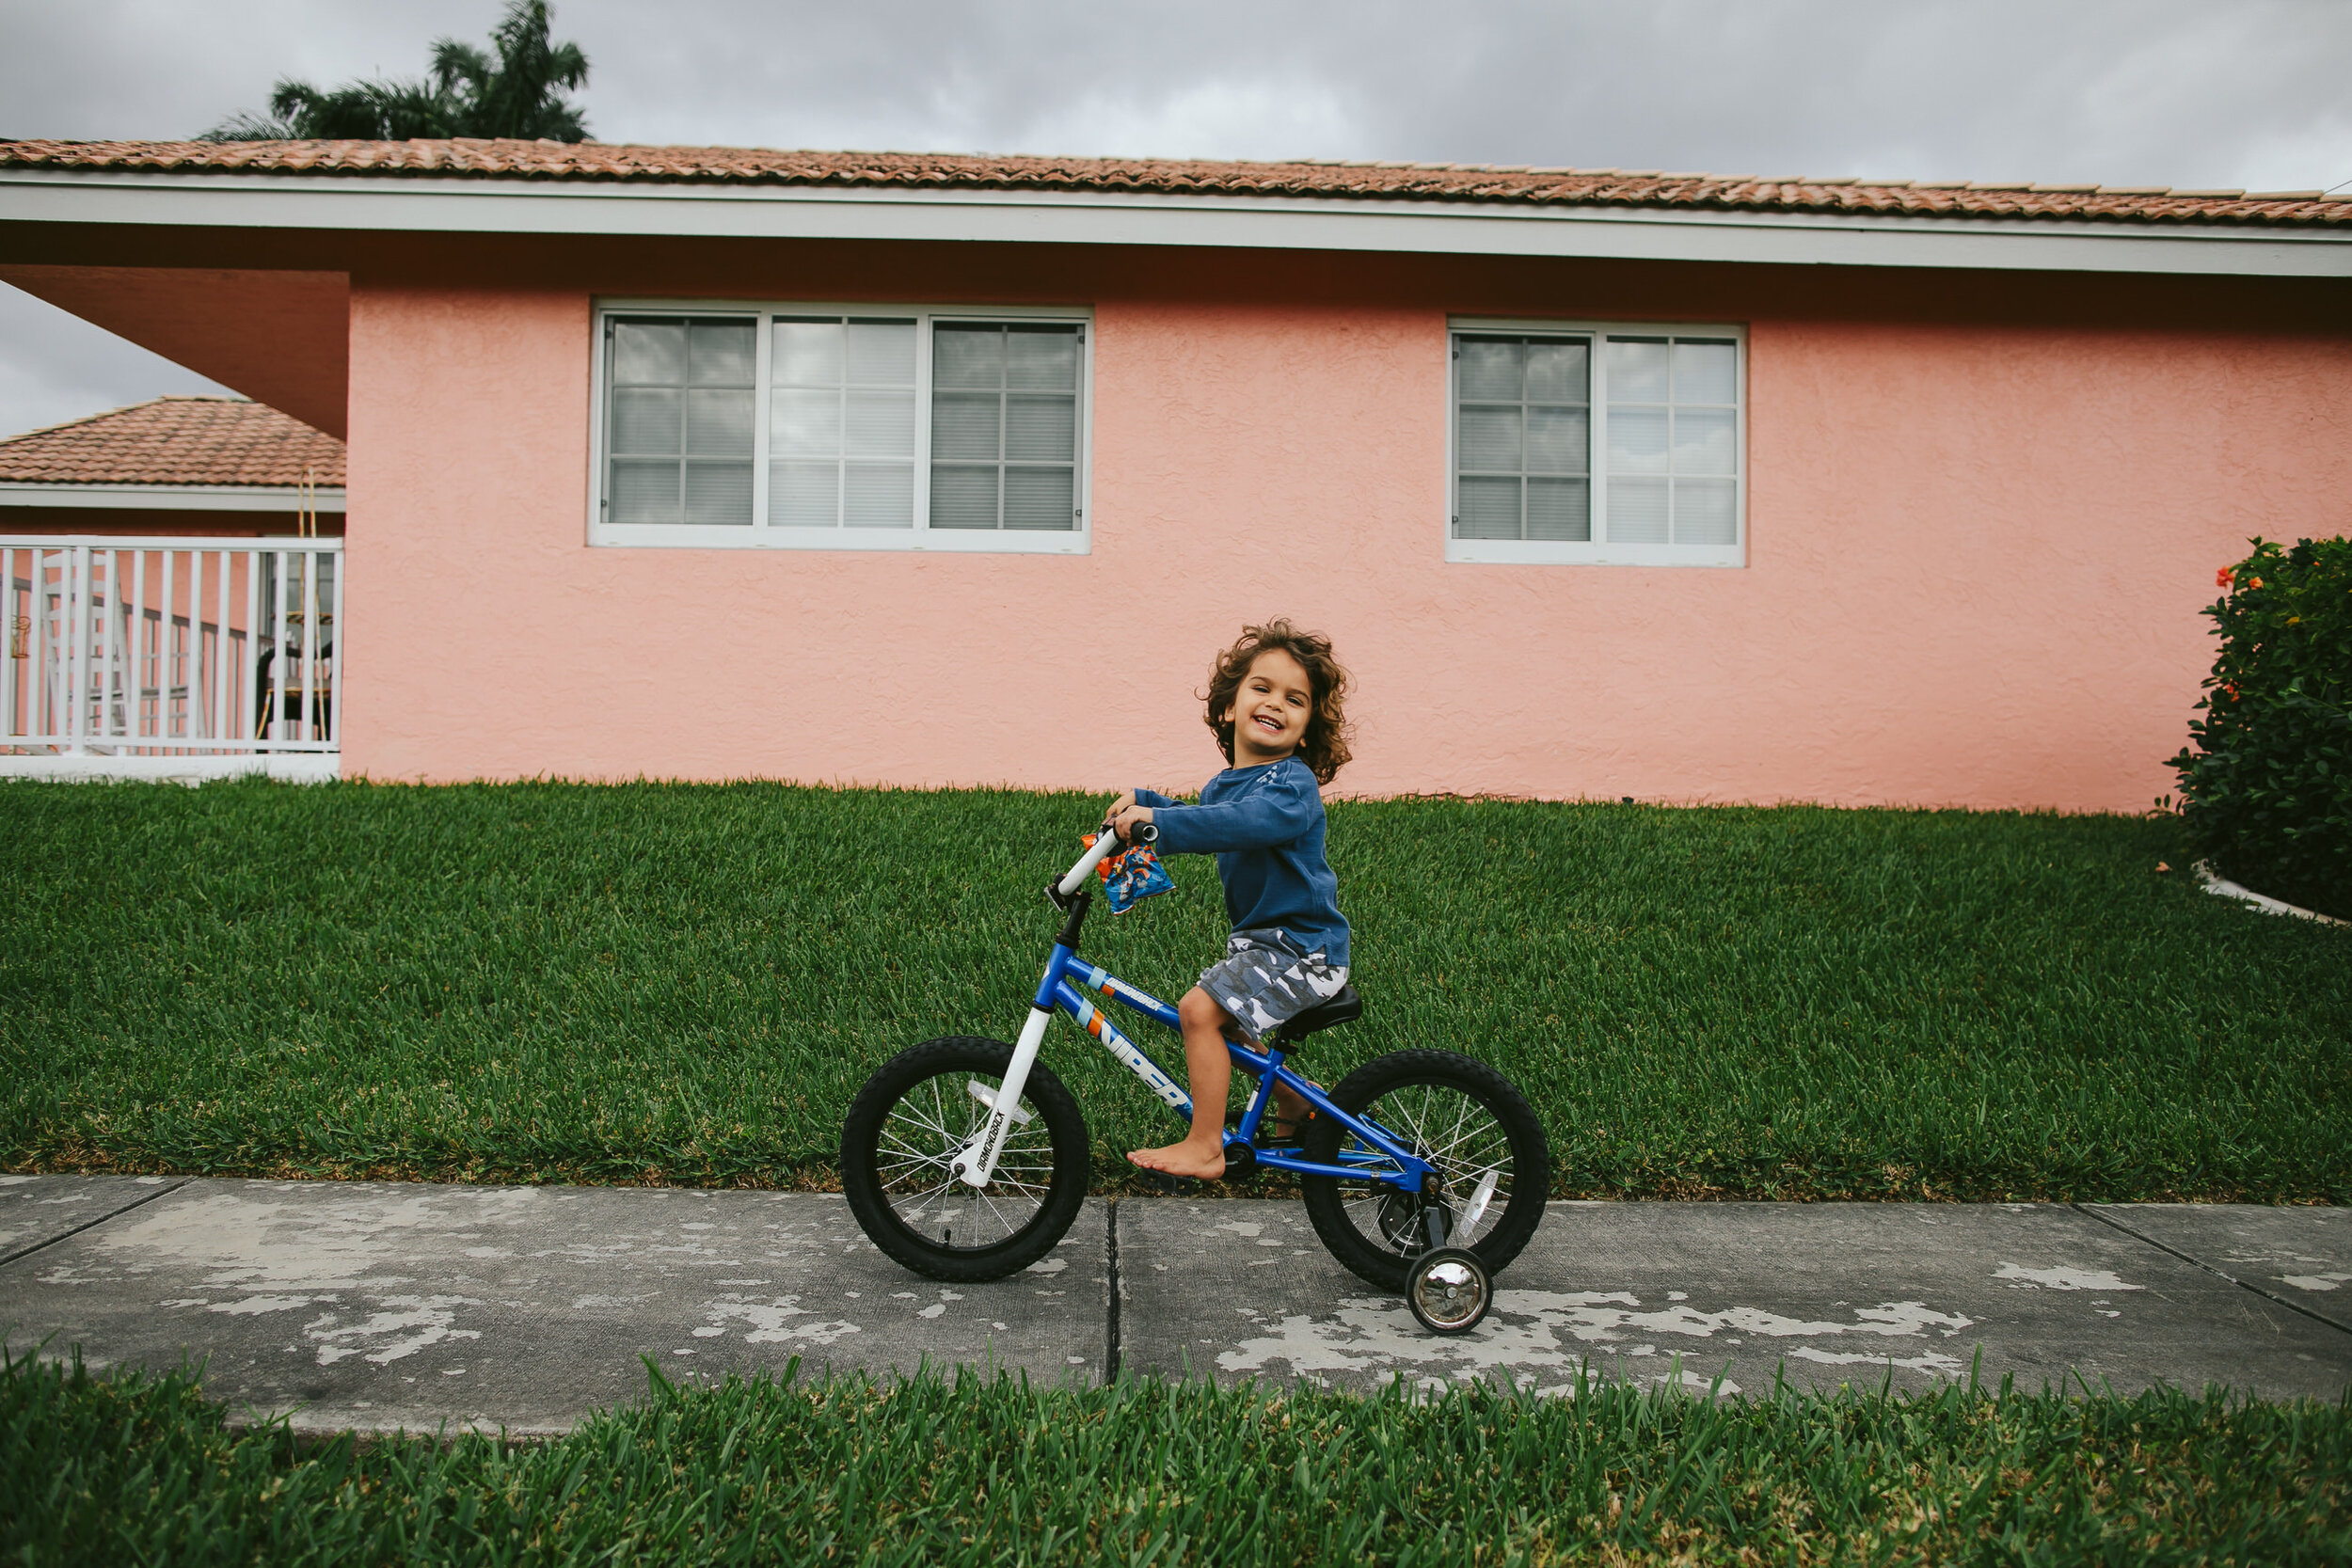 Family-DITL-Experience-Tiny-House-Photo-Florida-Photographer-46.jpg